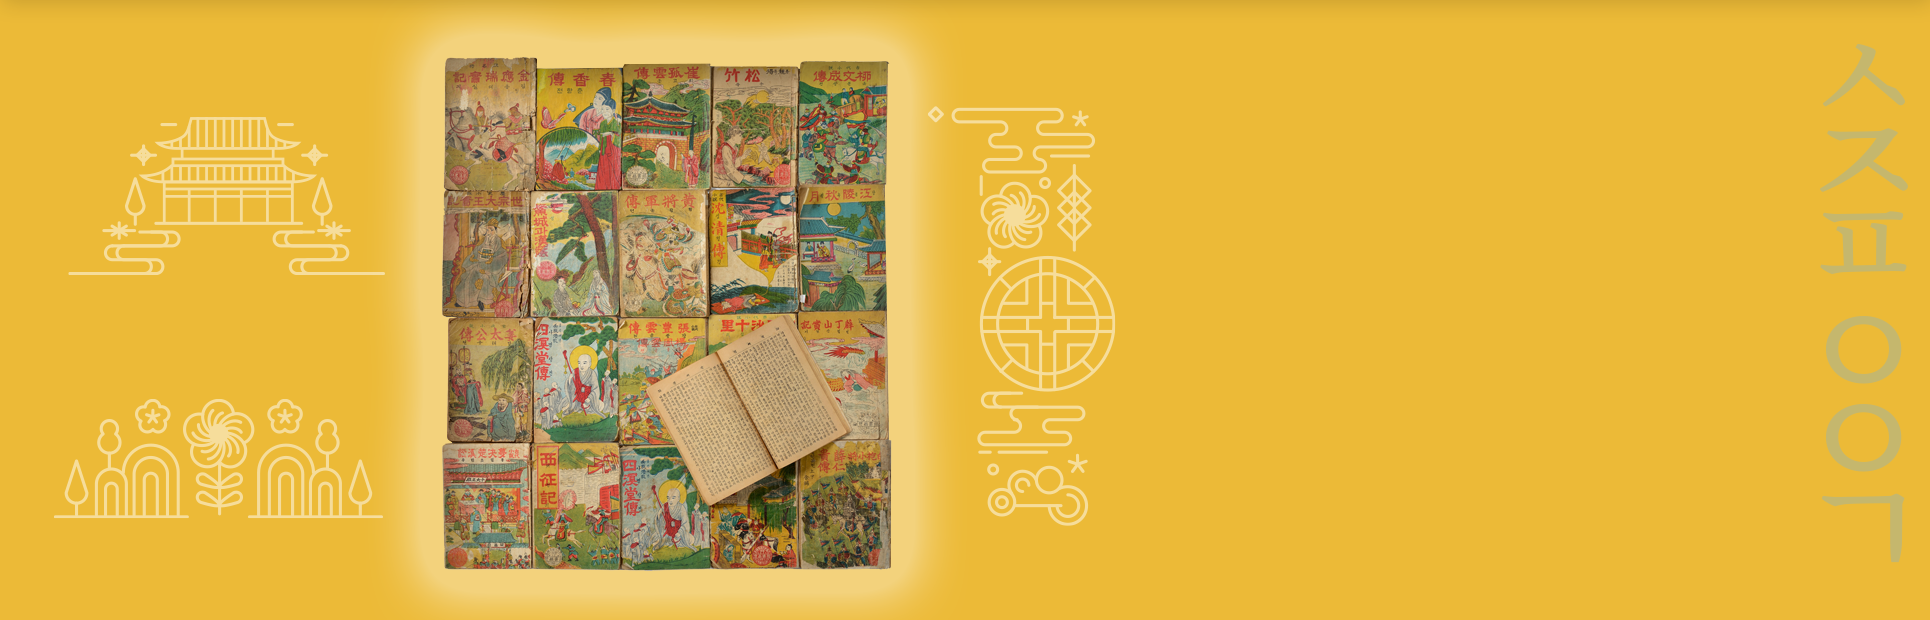 전통무늬가 새겨진 노란 배경에 구활자본 소설 사진이 삽입되어 있다. 책들은 나란히 사각형을 이루며 나열되어 있으며, 그중 한 권은 펼쳐져 있다. 표지들은 낡았으나 모두 알록달록하고 화려한 그림이 그려져 있다.